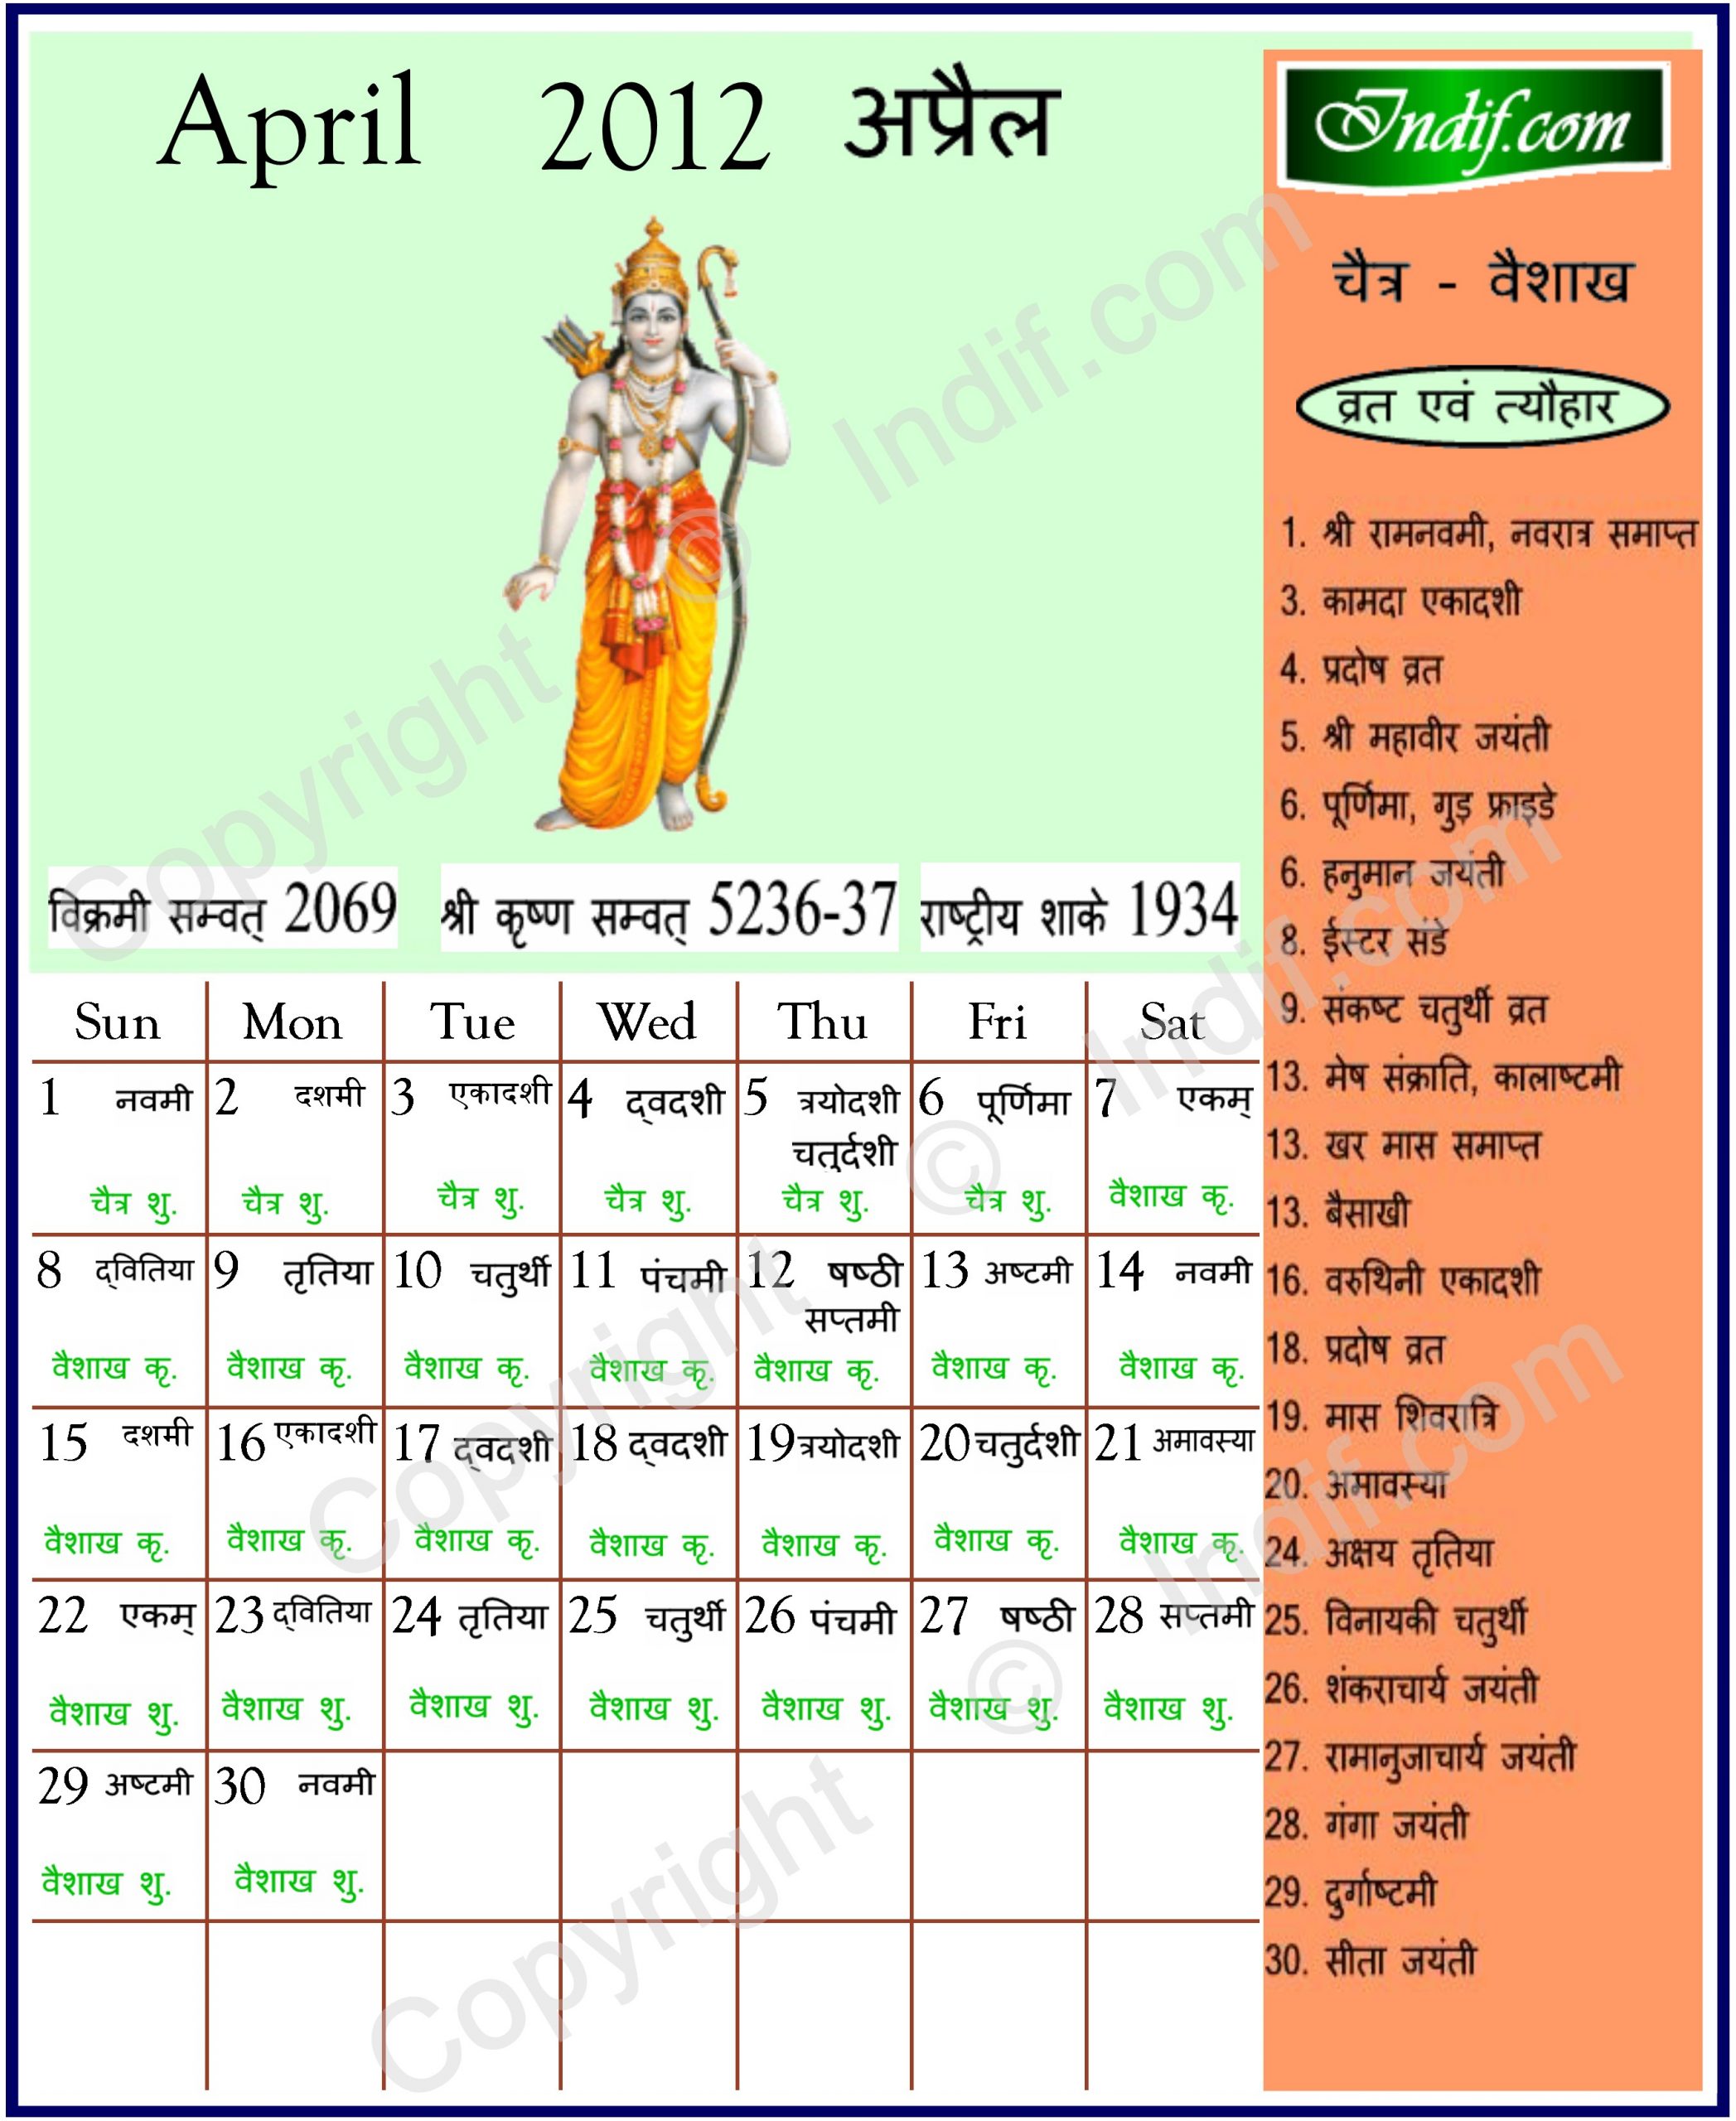 April 2012 - Indian Calendar, Hindu Calendar